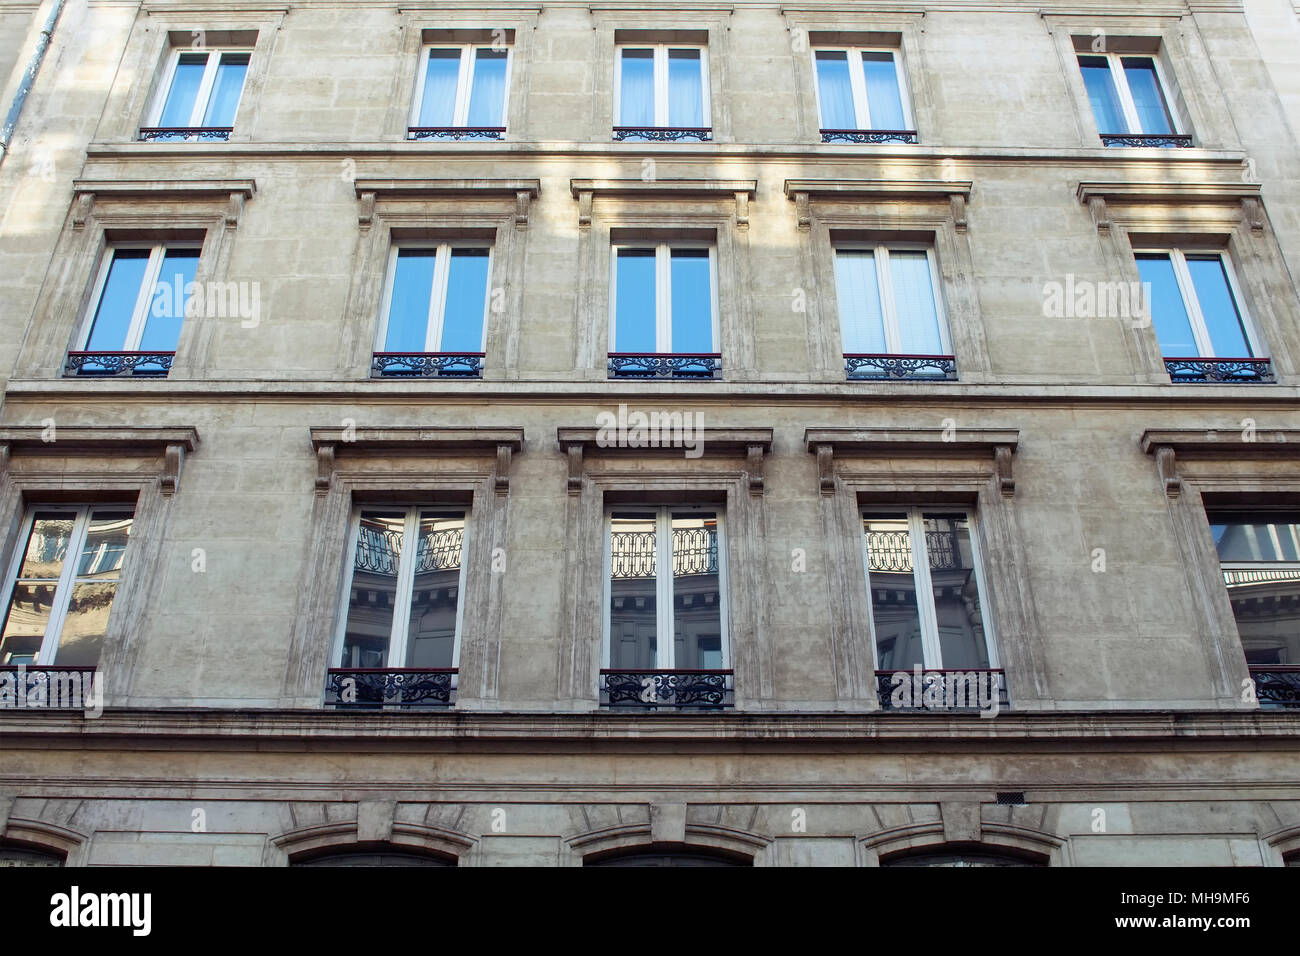 Vue du bas d'un immeuble à Paris montrant français / Parisian style architectural. Banque D'Images